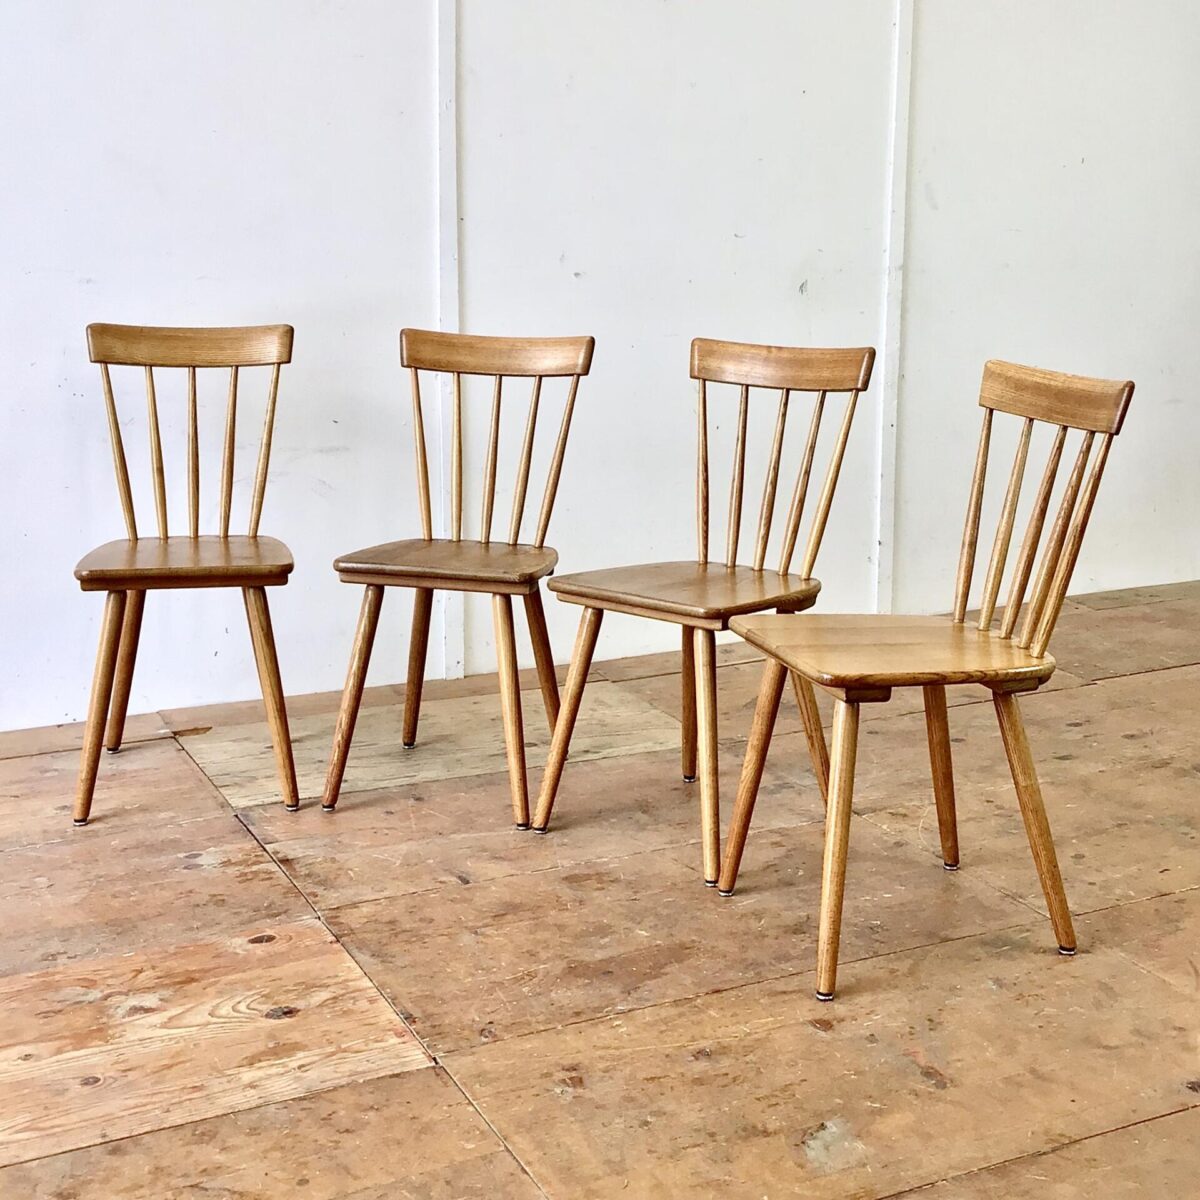 4er Set Sprossenstühle aus Eschenholz von Victoria Möbel. Sitzhöhe 45.5cm. Feingliedrige Bequeme Esszimmer Stühle (Stabellen). Eine schöne Abwechslung im Vergleich zu anderen Schweizer Holzstühlen, welche meistens aus Buchenholz sind.